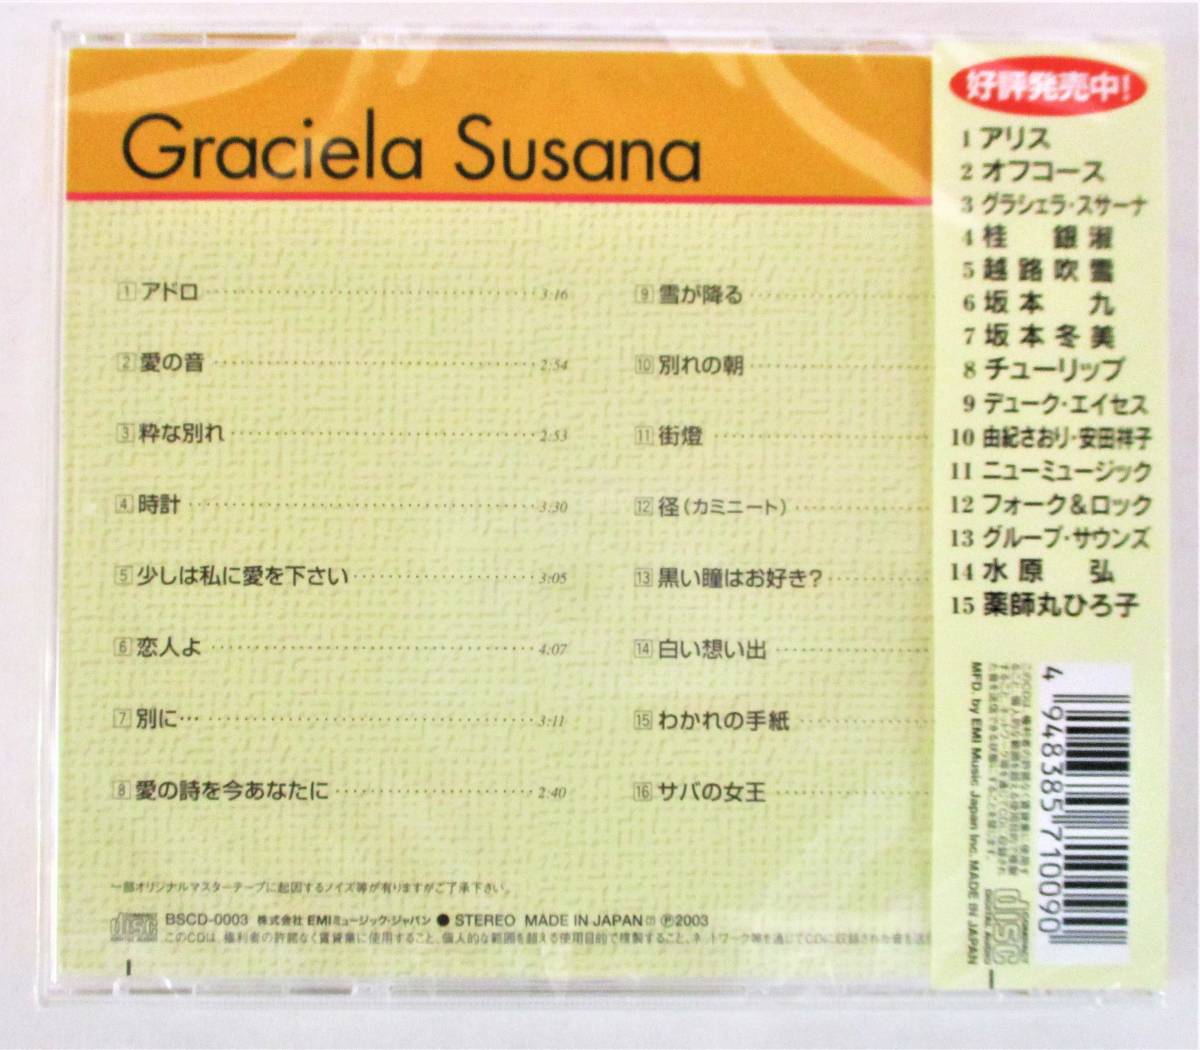 グラシェラスサーナ ベストセレクション アドロ サバの女王 CD 新品 未開封_画像2